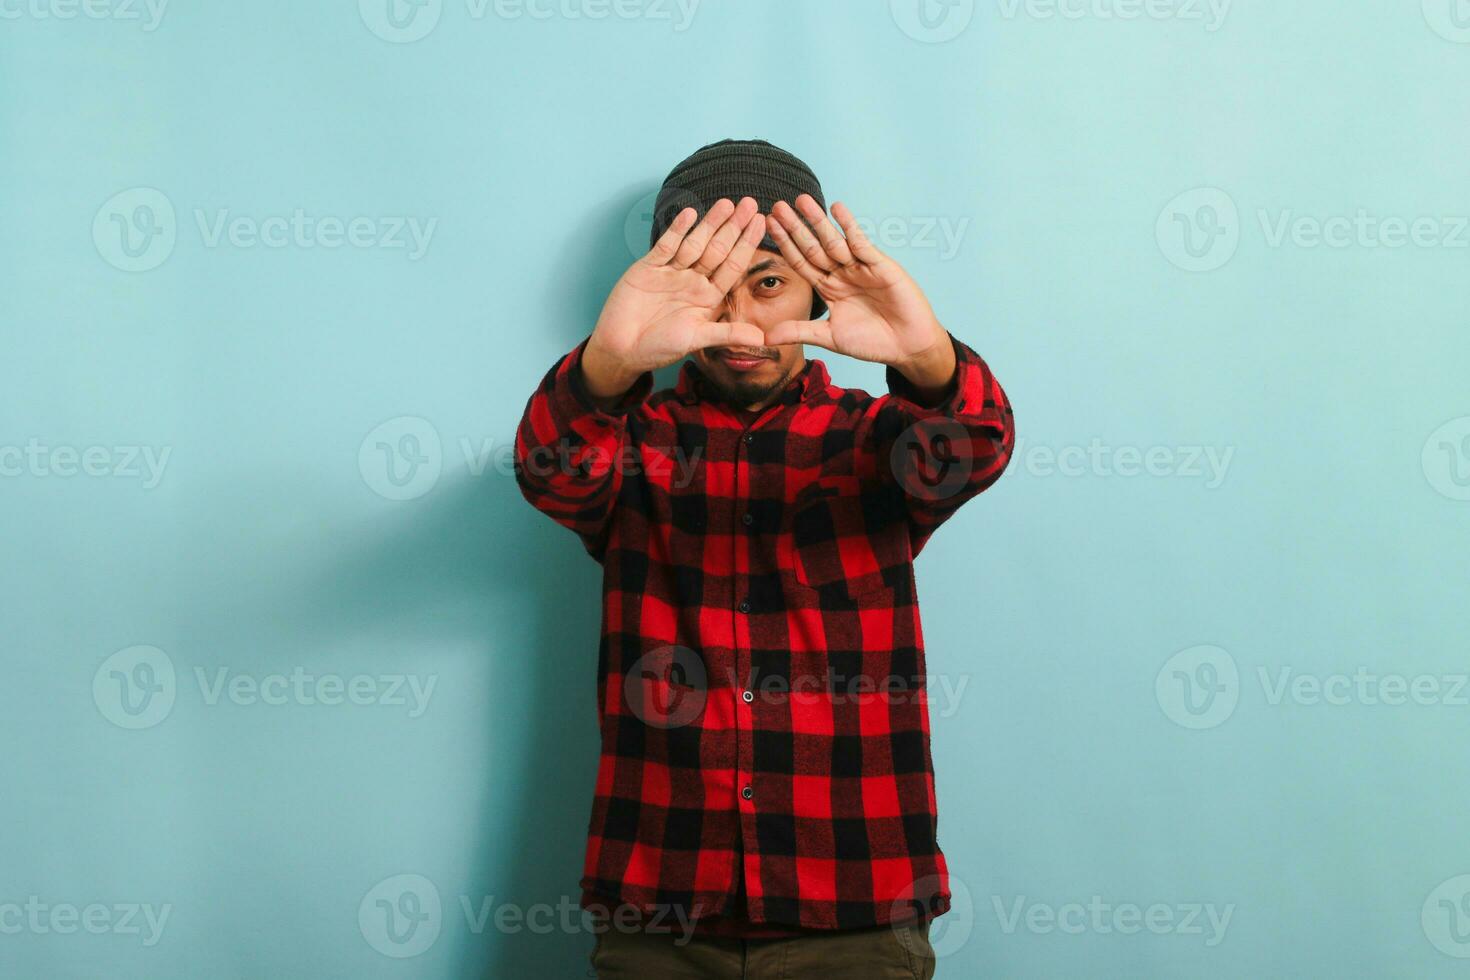 jong Aziatisch Mens met muts hoed en rood plaid flanel overhemd maken een driehoek gebaar met handpalmen, symboliseert de milieu bescherming, recyclen, en hergebruik concept, geïsoleerd Aan een blauw achtergrond foto